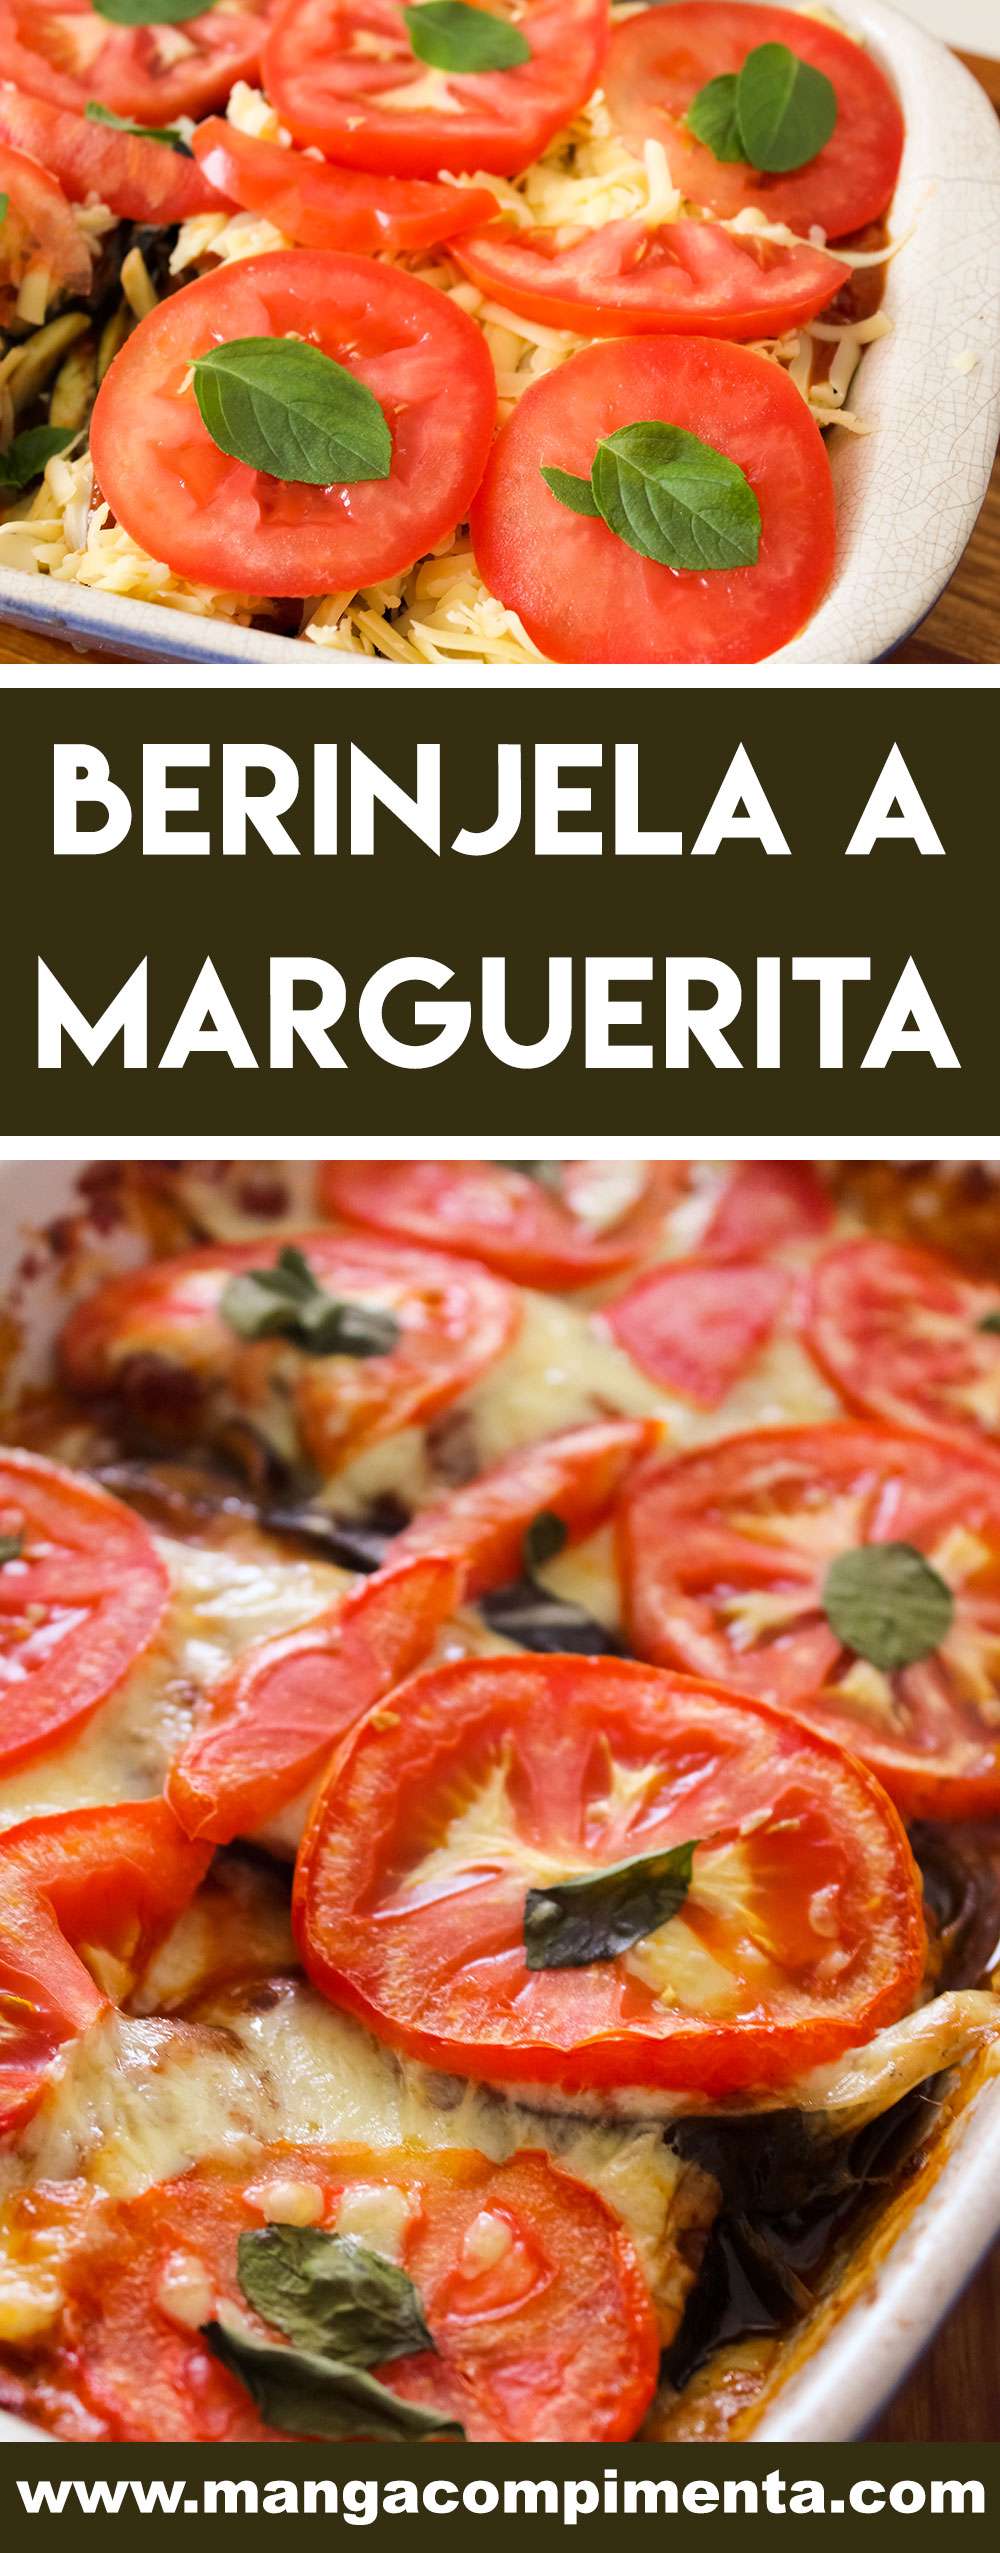 Receita de Berinjela a Marguerita - um delicioso prato de berinjela com queijo, tomate e manjericão.